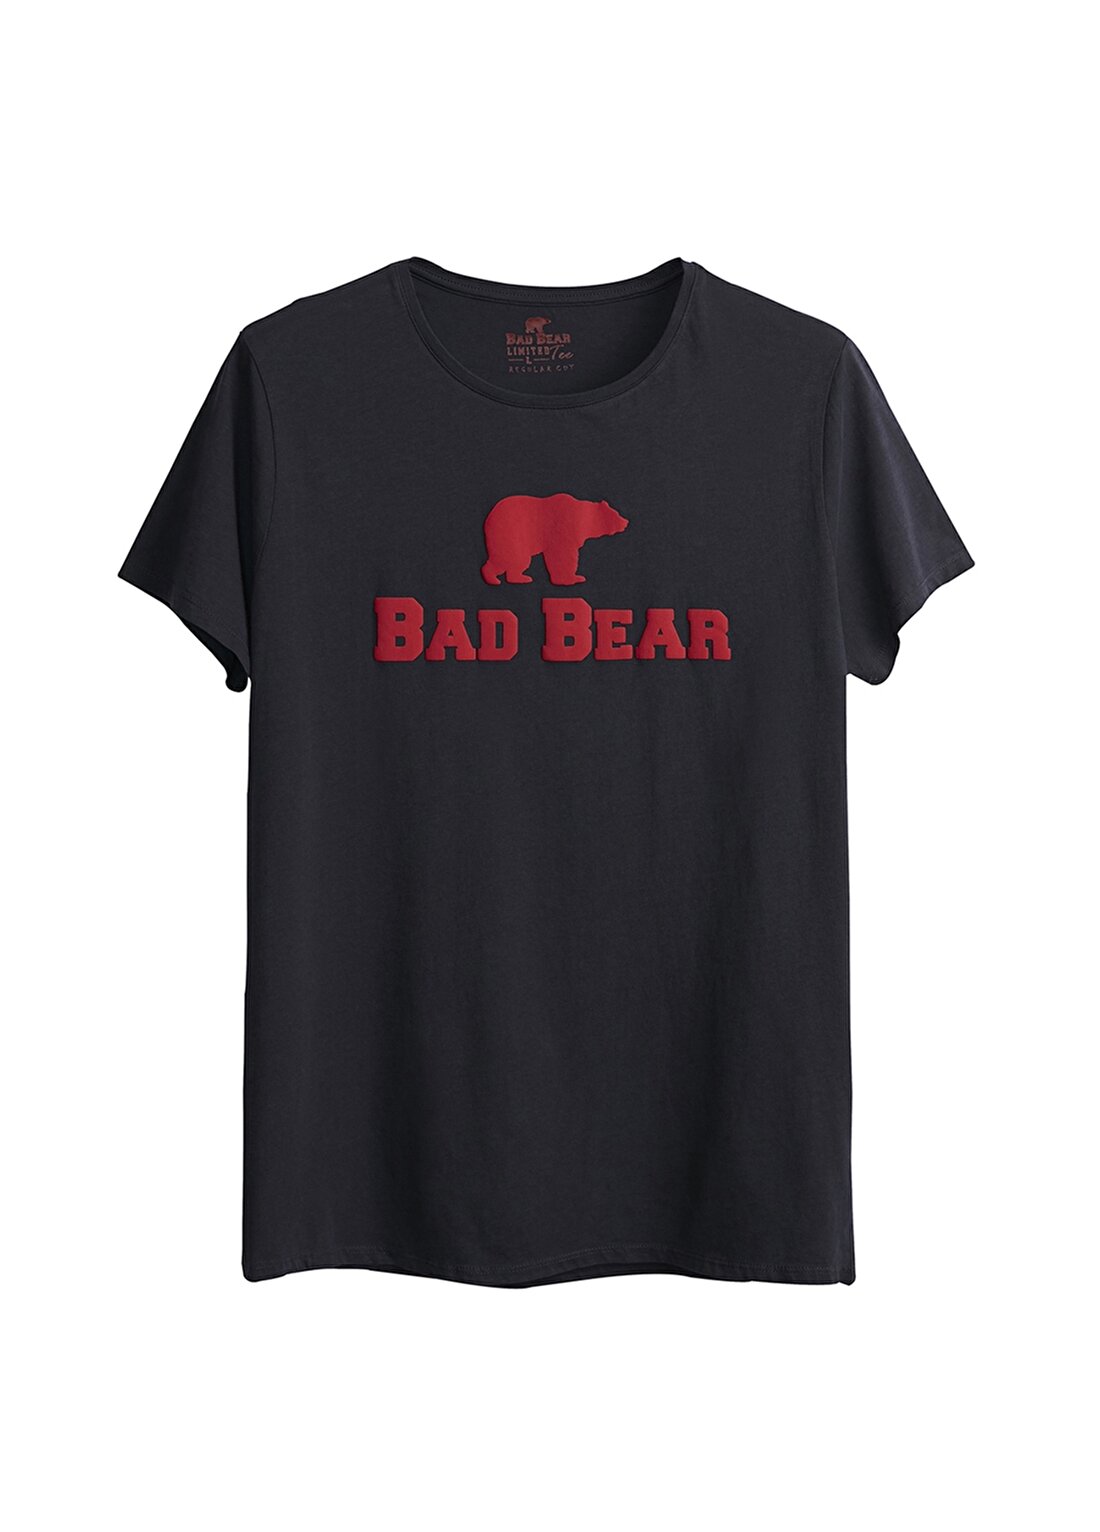 Bad Bear 19.01.07.002.Bad Bear Tee Antrasit Erkek T-Shirt